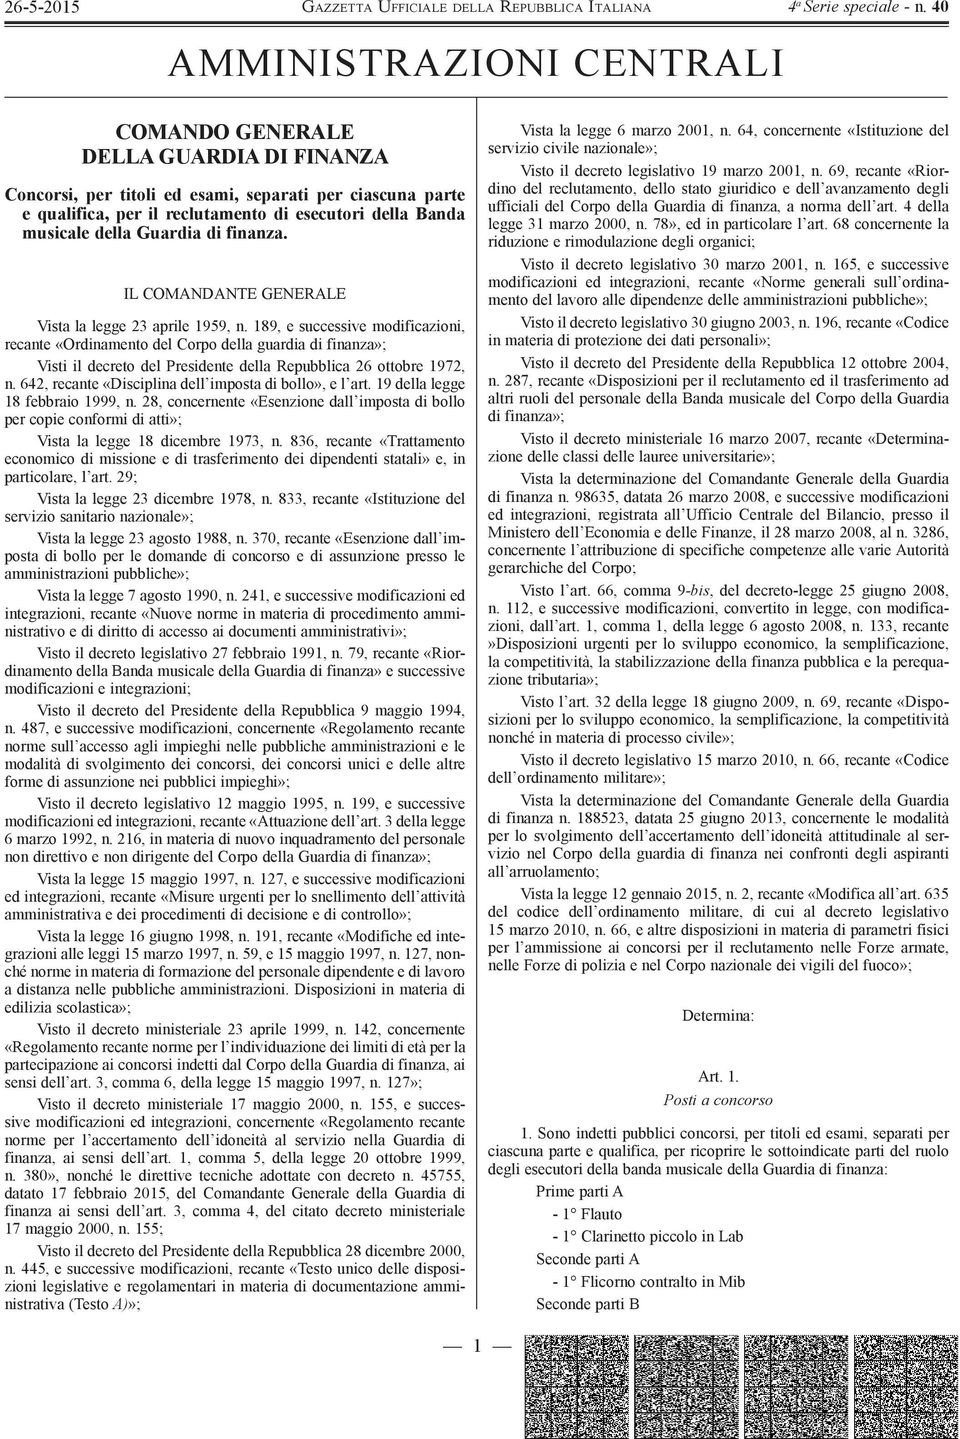 189, e successive modificazioni, recante «Ordinamento del Corpo della guardia di finanza»; Visti il decreto del Presidente della Repubblica 26 ottobre 1972, n.